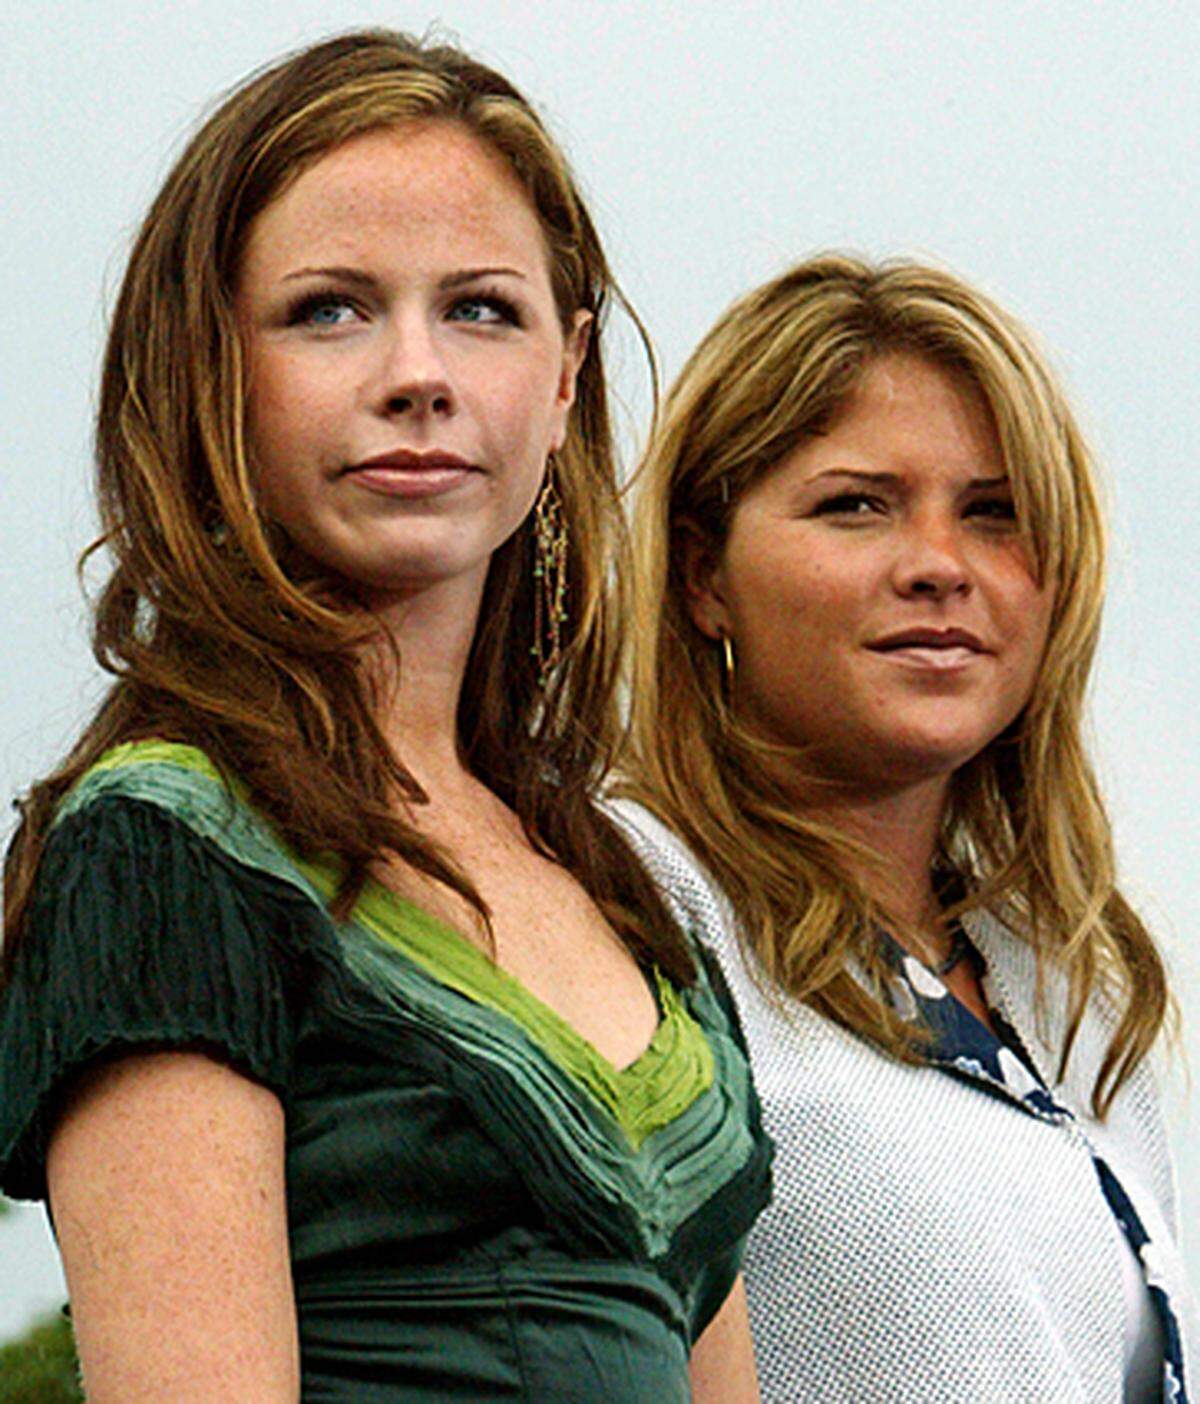 Diese beiden waren einst die "First Twins" in den USA. Jenna und Barbara Bush (links) wird man aber eher selten verwechseln, die beiden sind sich äußerlich nicht sehr ähnlich.